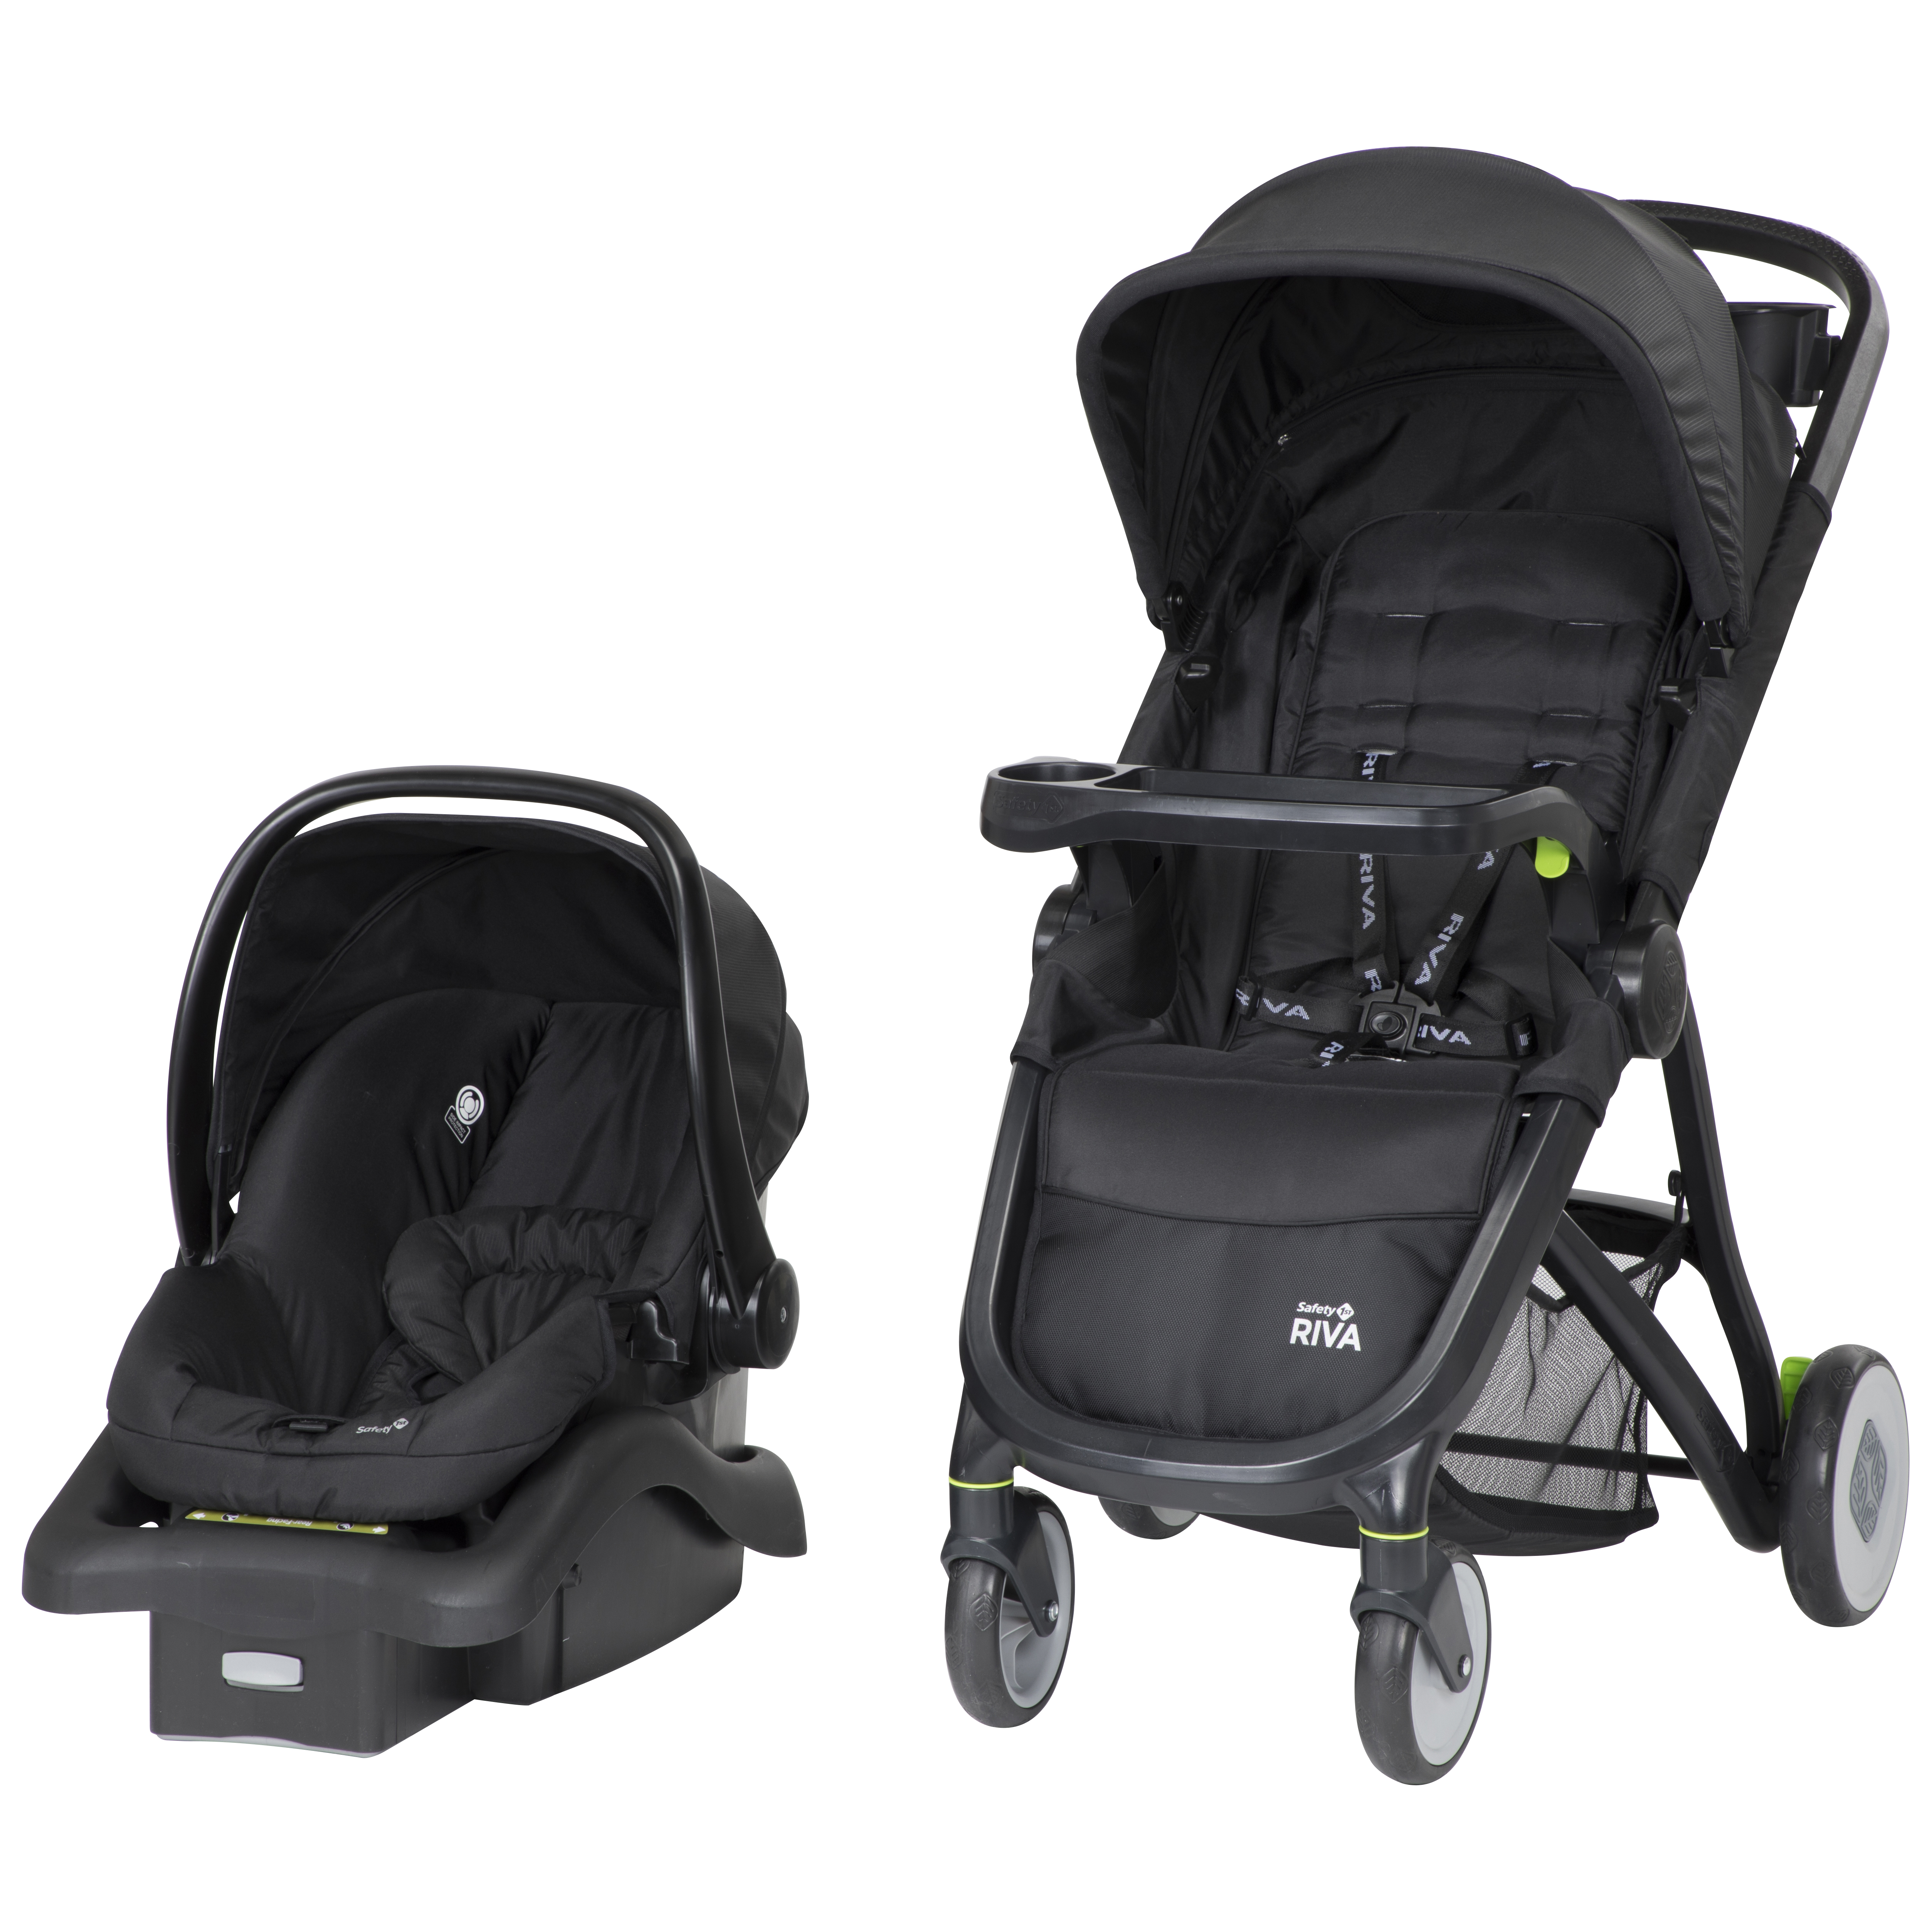 safest infant car seat stroller combo 2019